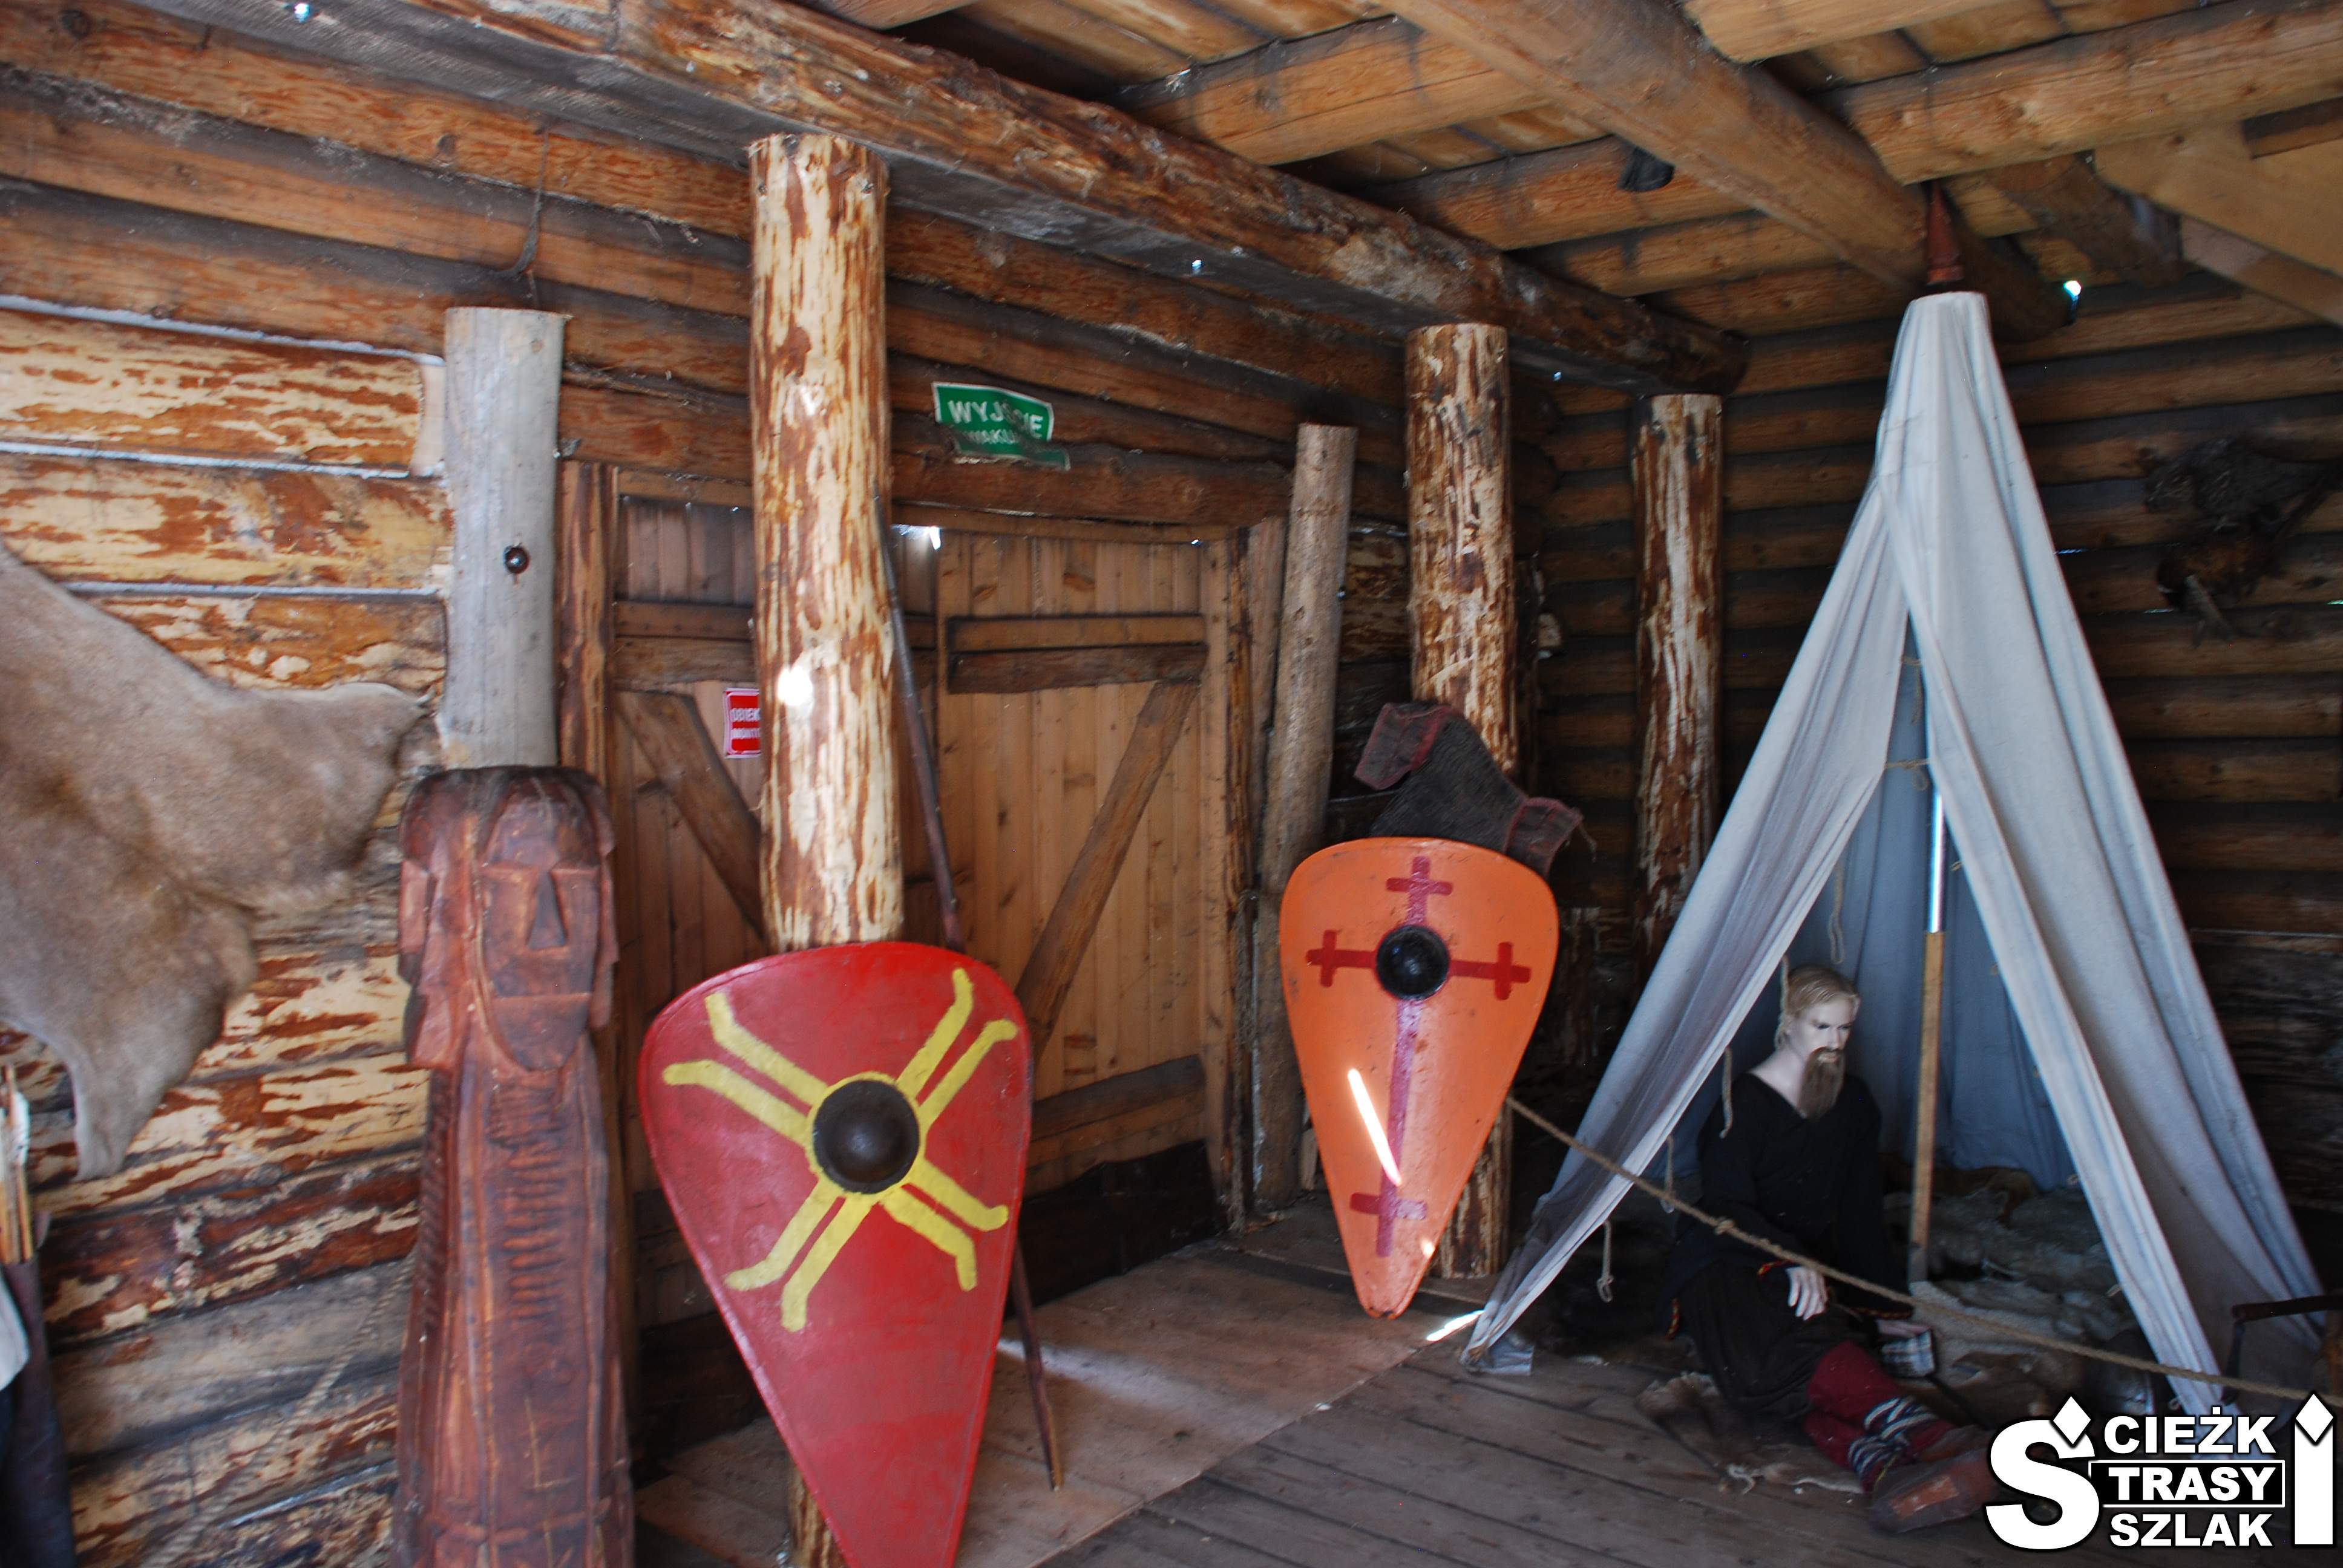 Tarcze z rycerskimi herbami przy namiocie Słowian wewnątrz drewnianej chaty w Grodzie Birów w Podzamczu